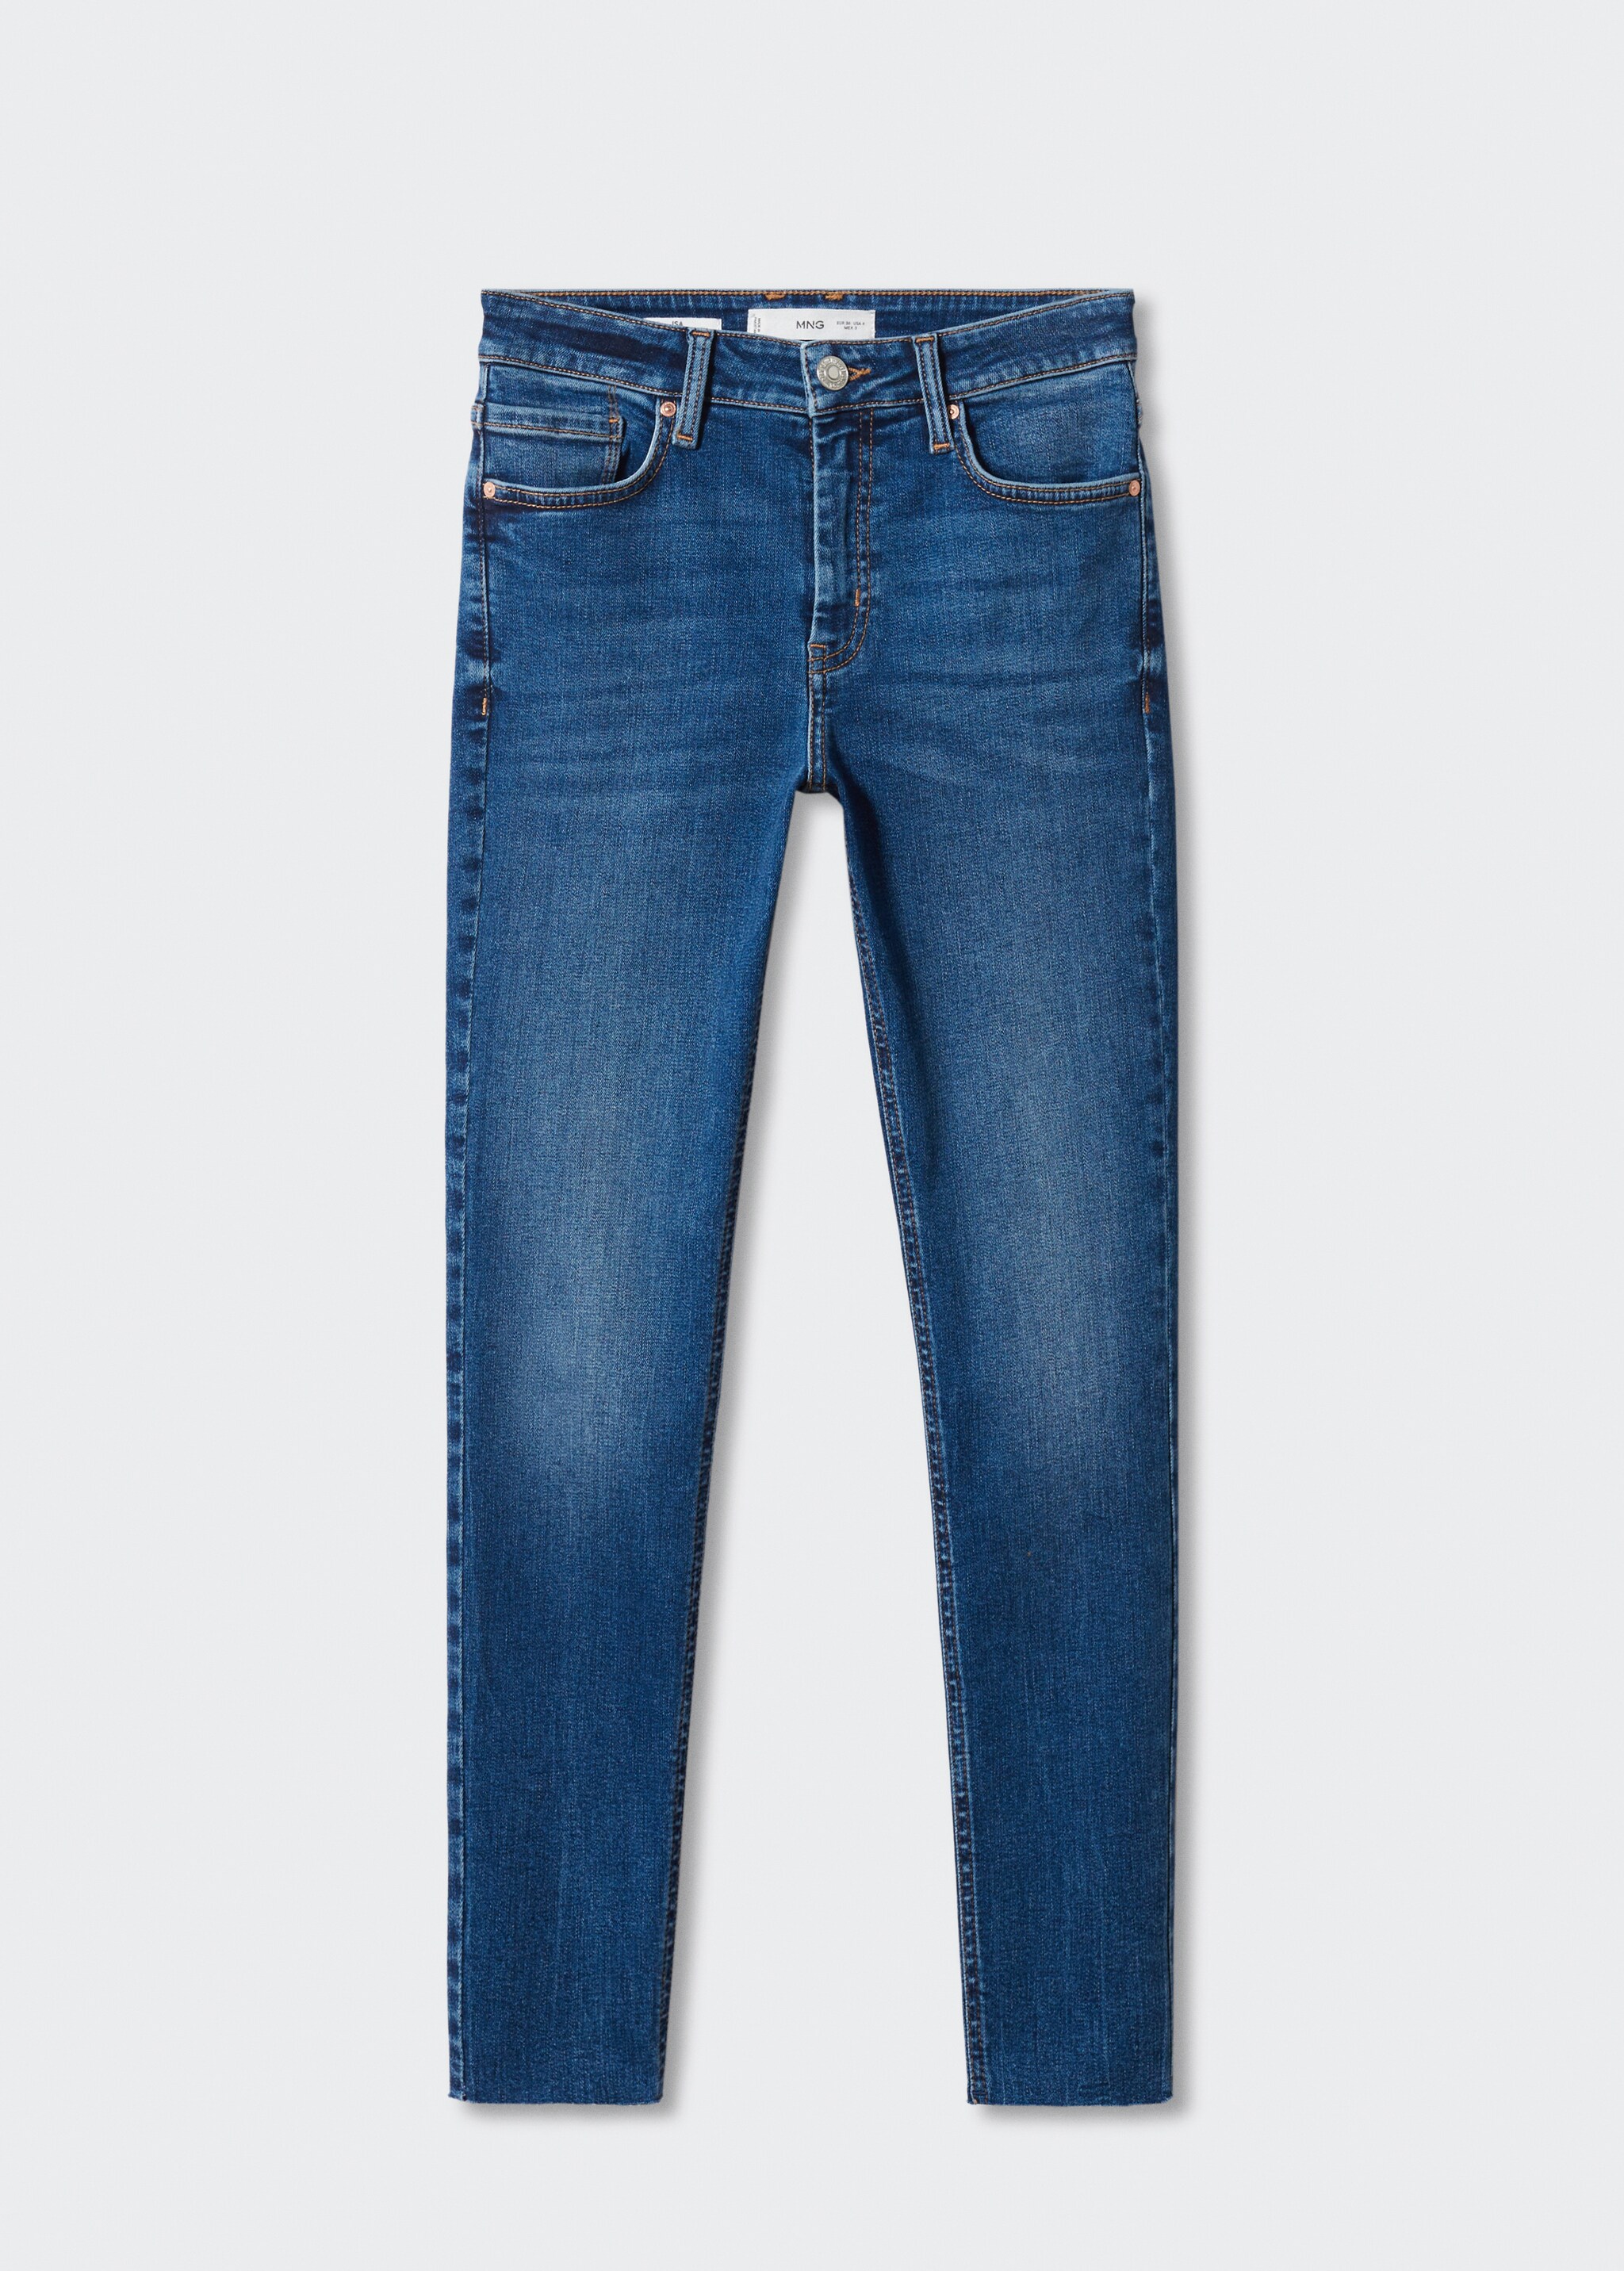 Skinny cropped jean - Modelsiz ürün